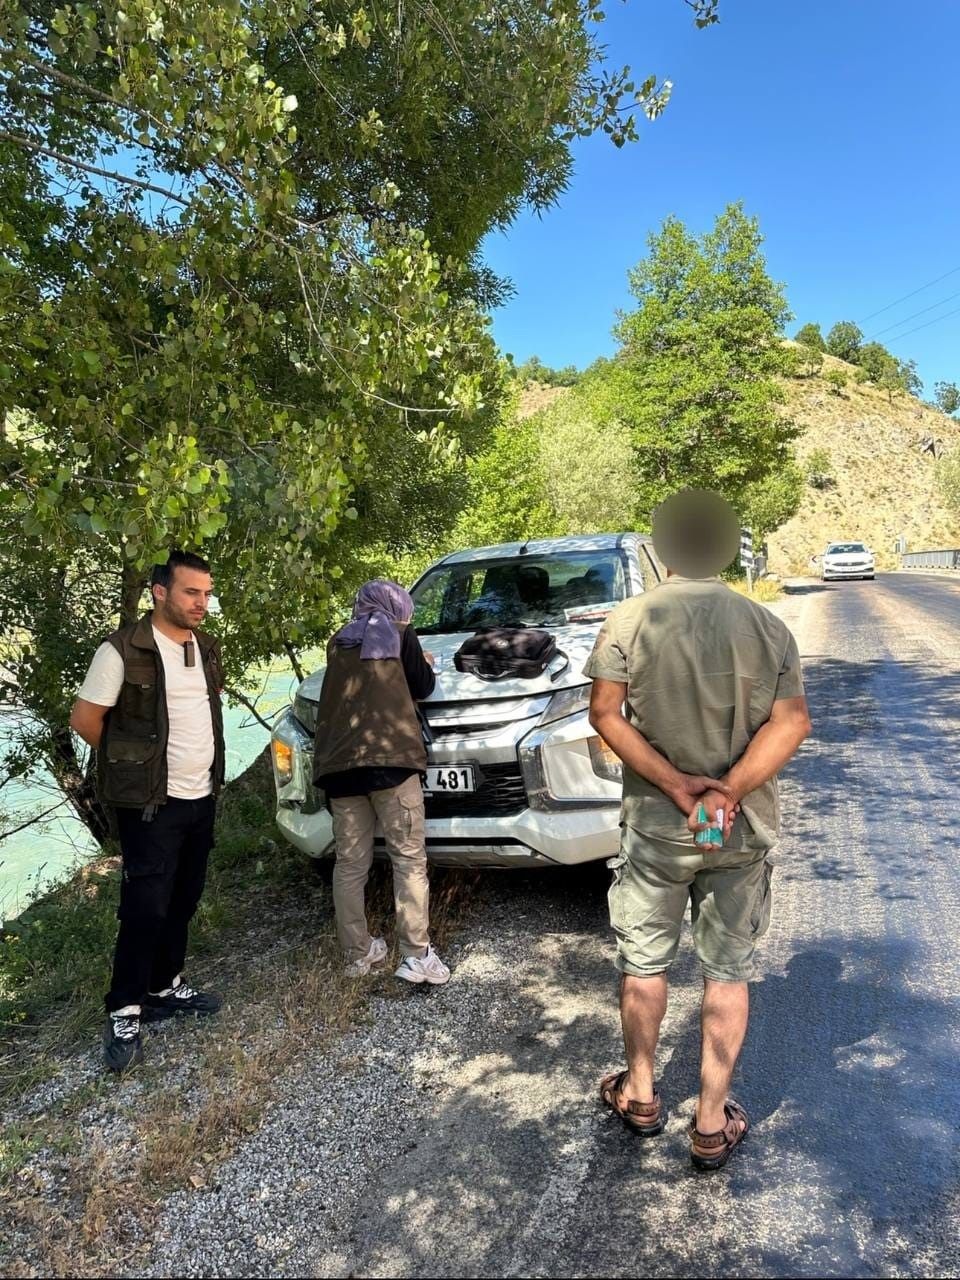 Tunceli’de kaçak avcılık yapan 3 kişiye ceza
